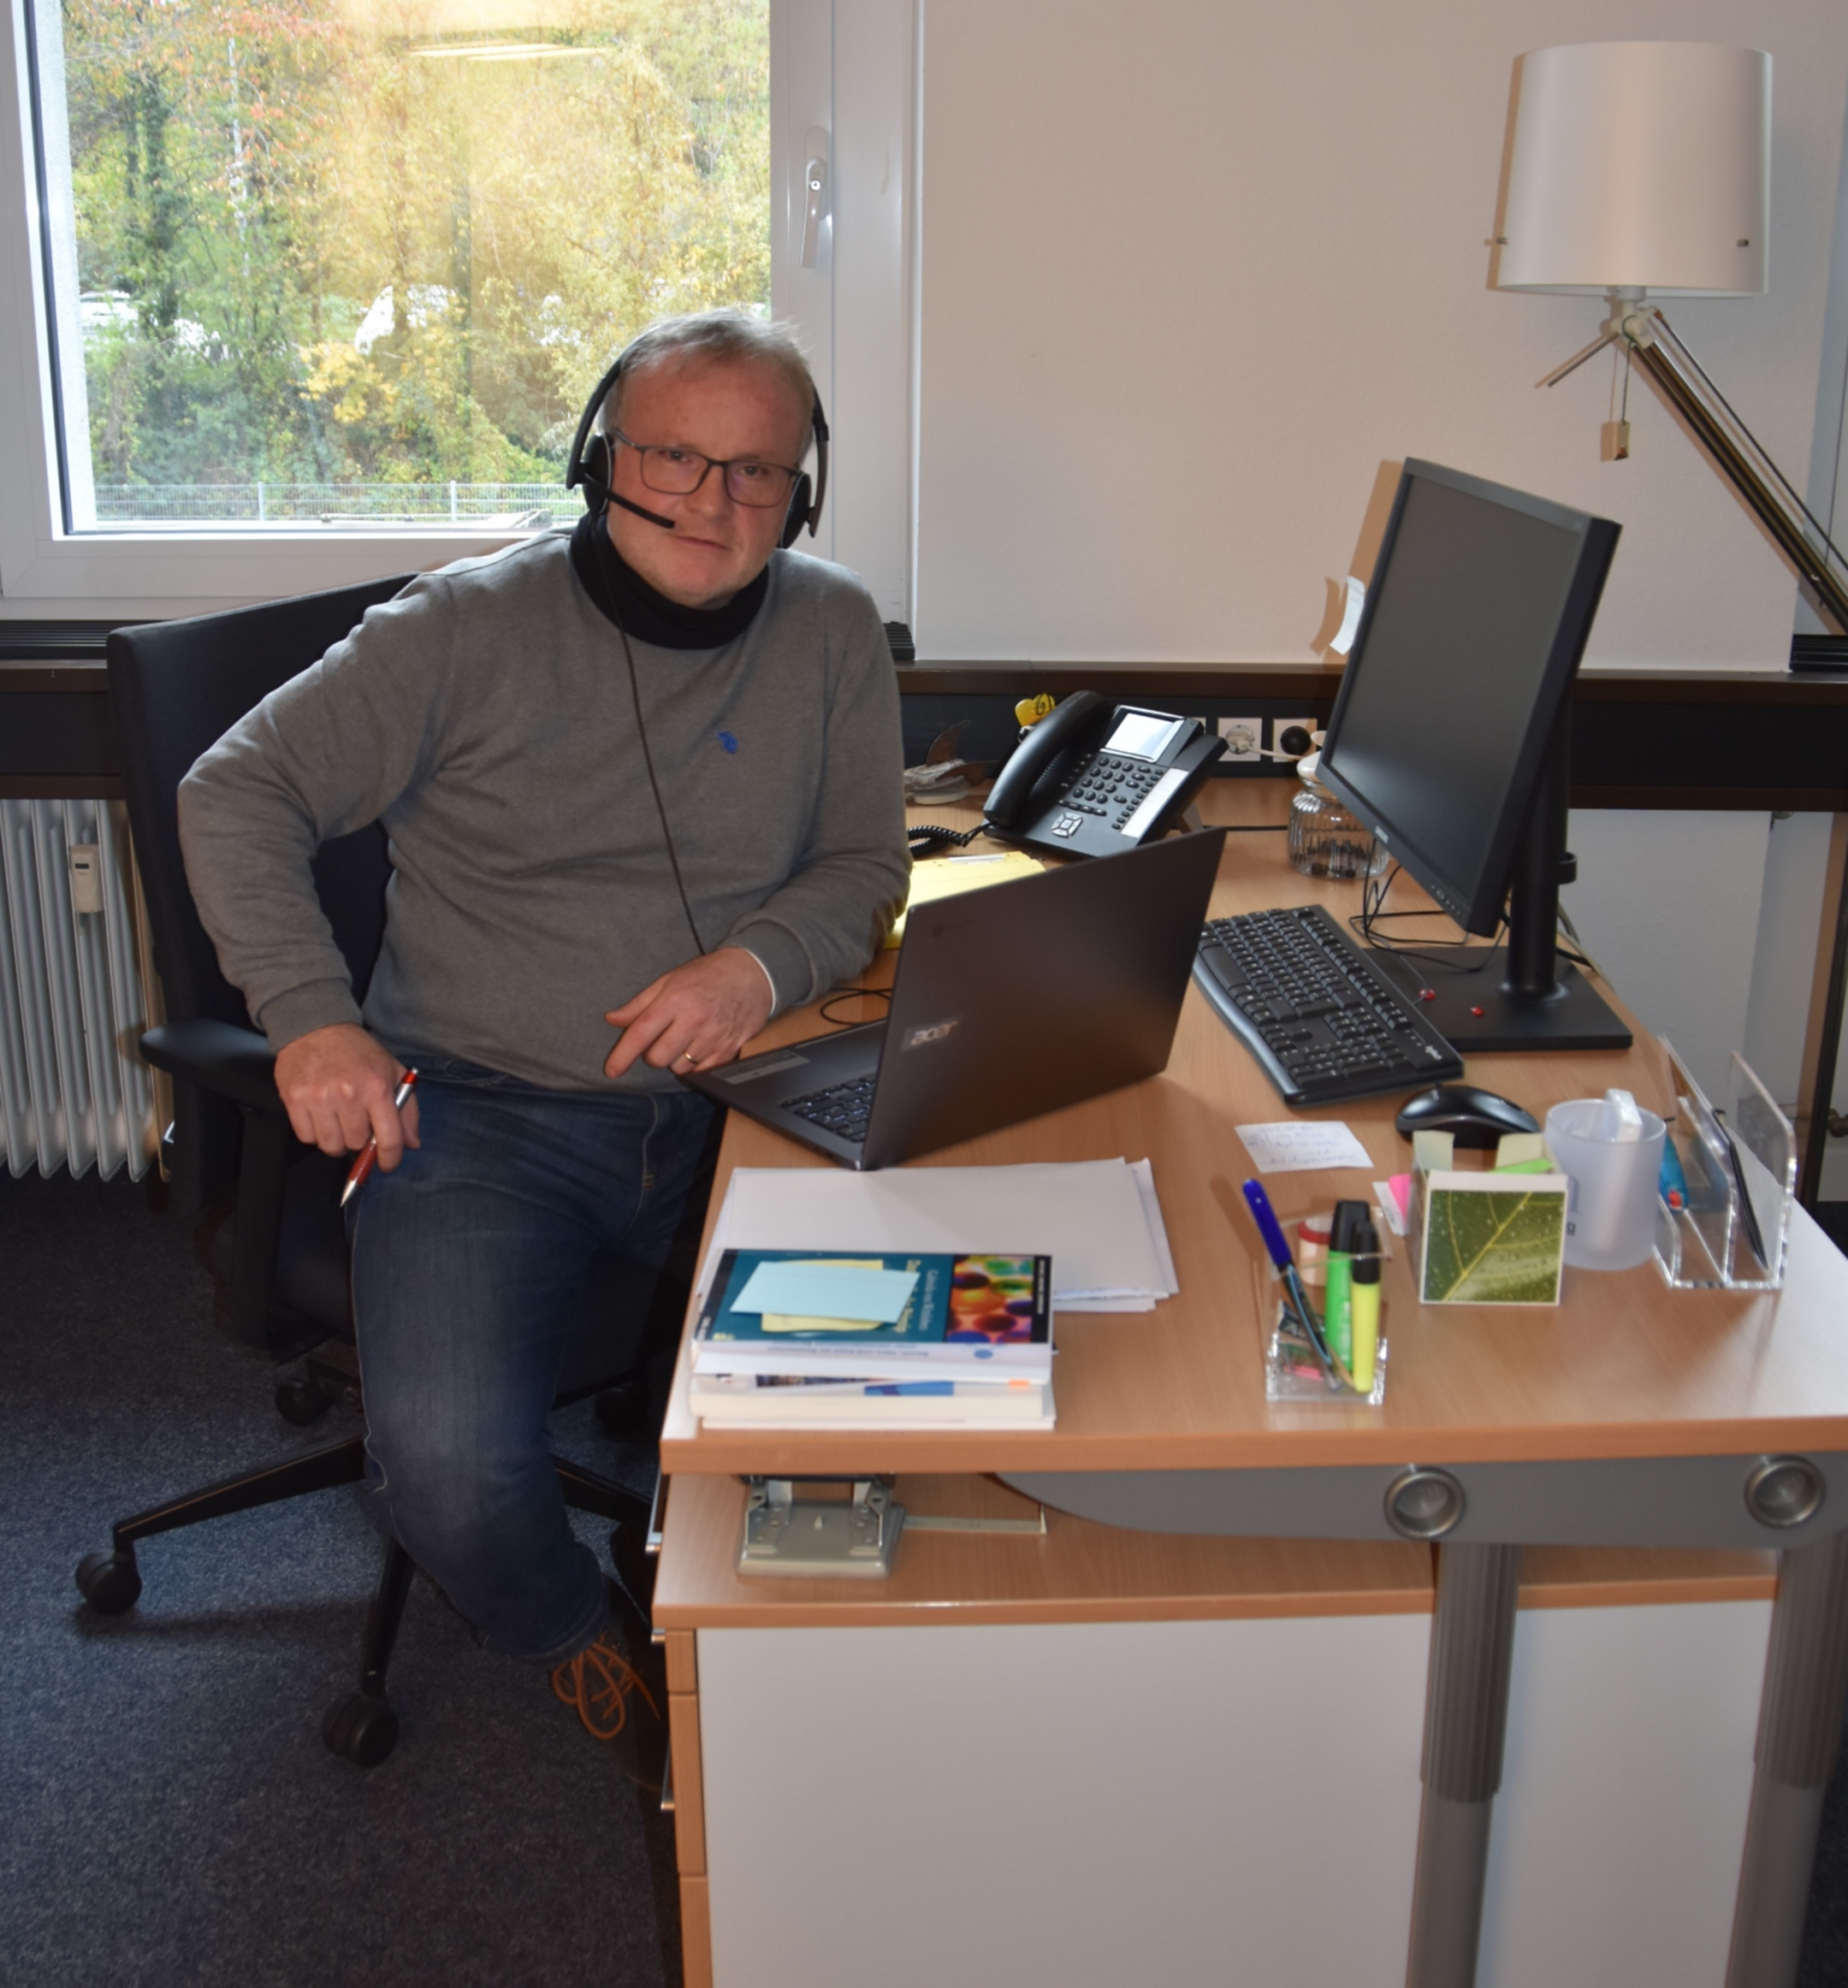 Renator Barachino, Leiter der Lebensberatungsstelle in Saarbrücken, kann Ratsuchenden via Chromebook und Headset via Videochat beraten. Die Anschaffung ermöglichte die Stiftung Lebensberatung.